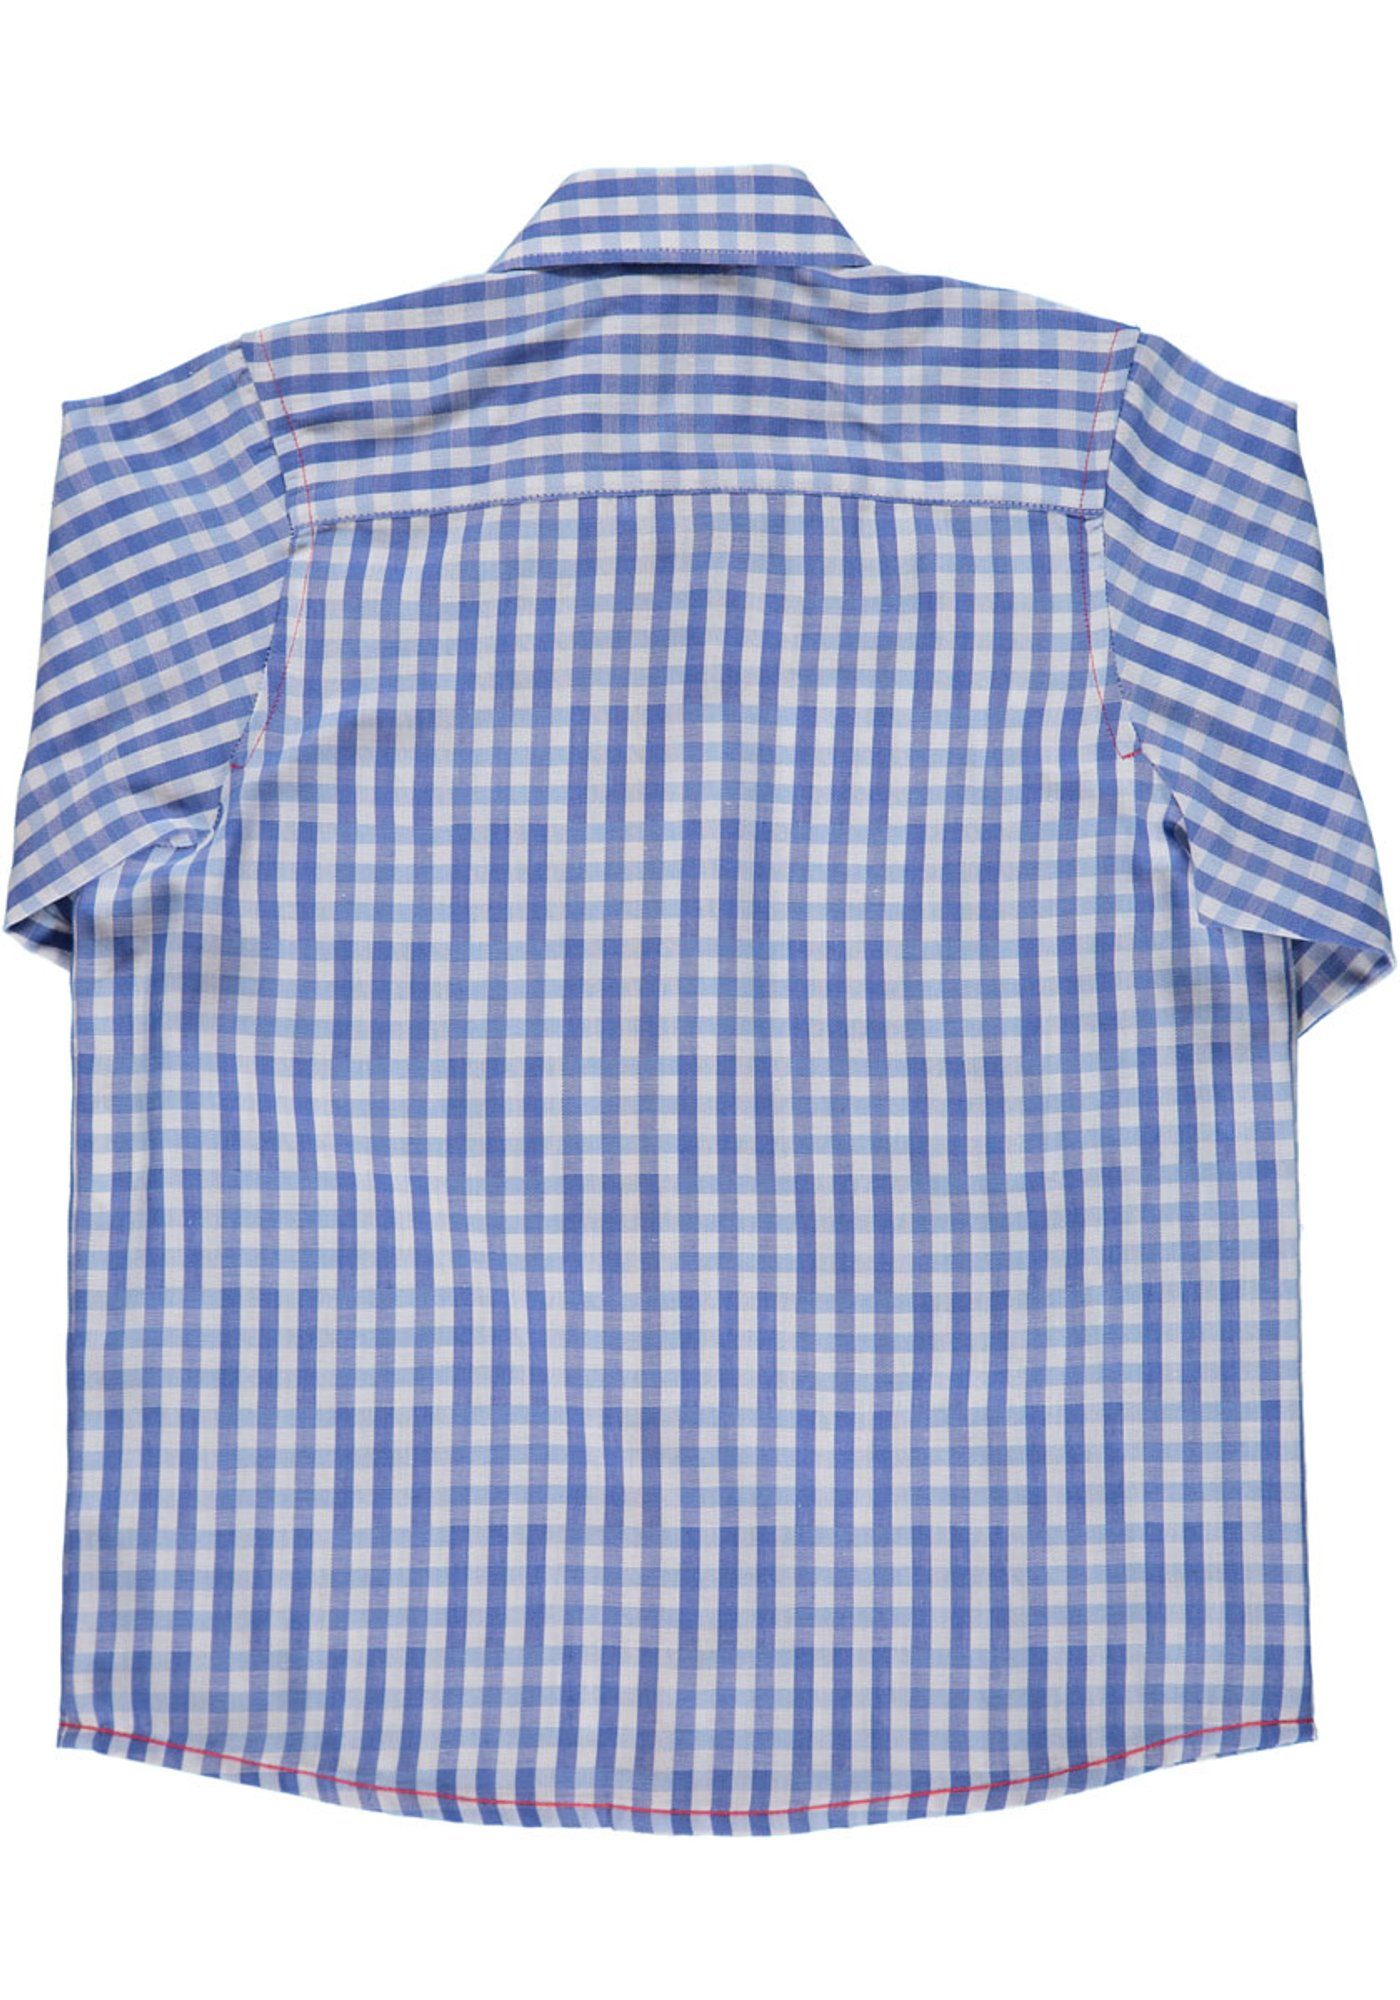 OS-Trachten Trachtenhemd Pexxa Langarm 3D-Optik Hemd hellblau/bleu Jungen mit